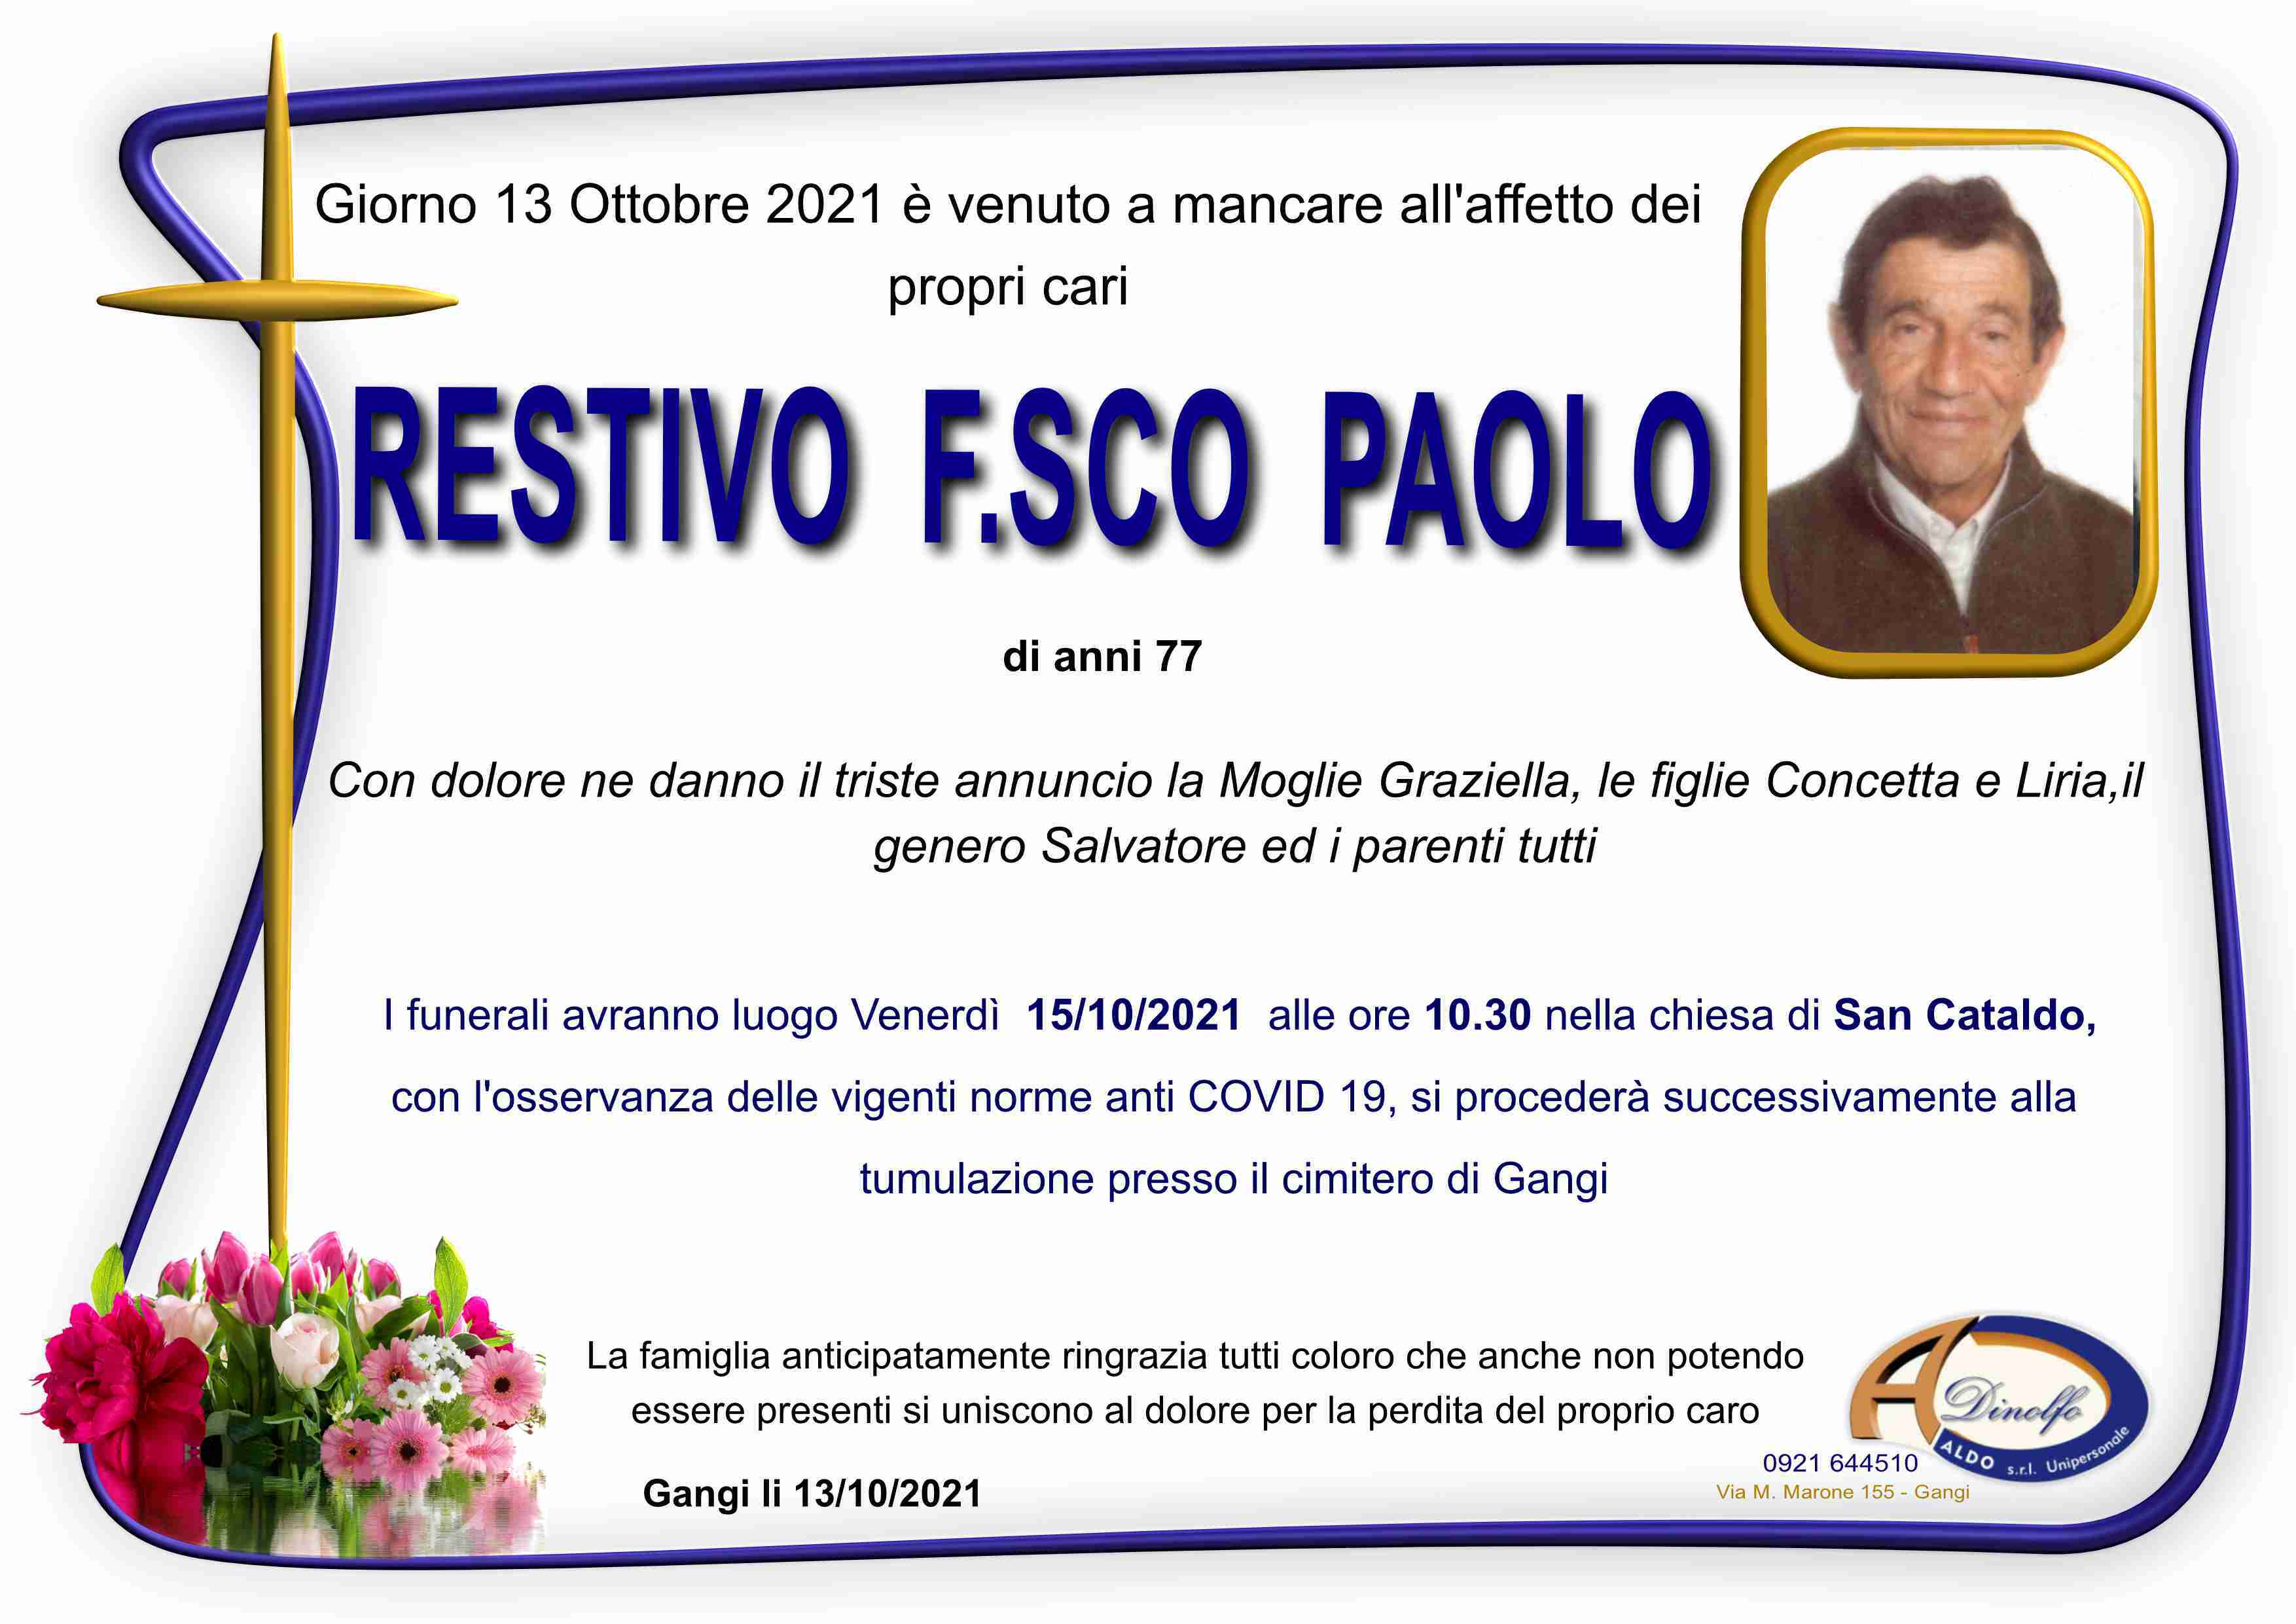 Francesco Paolo Restivo